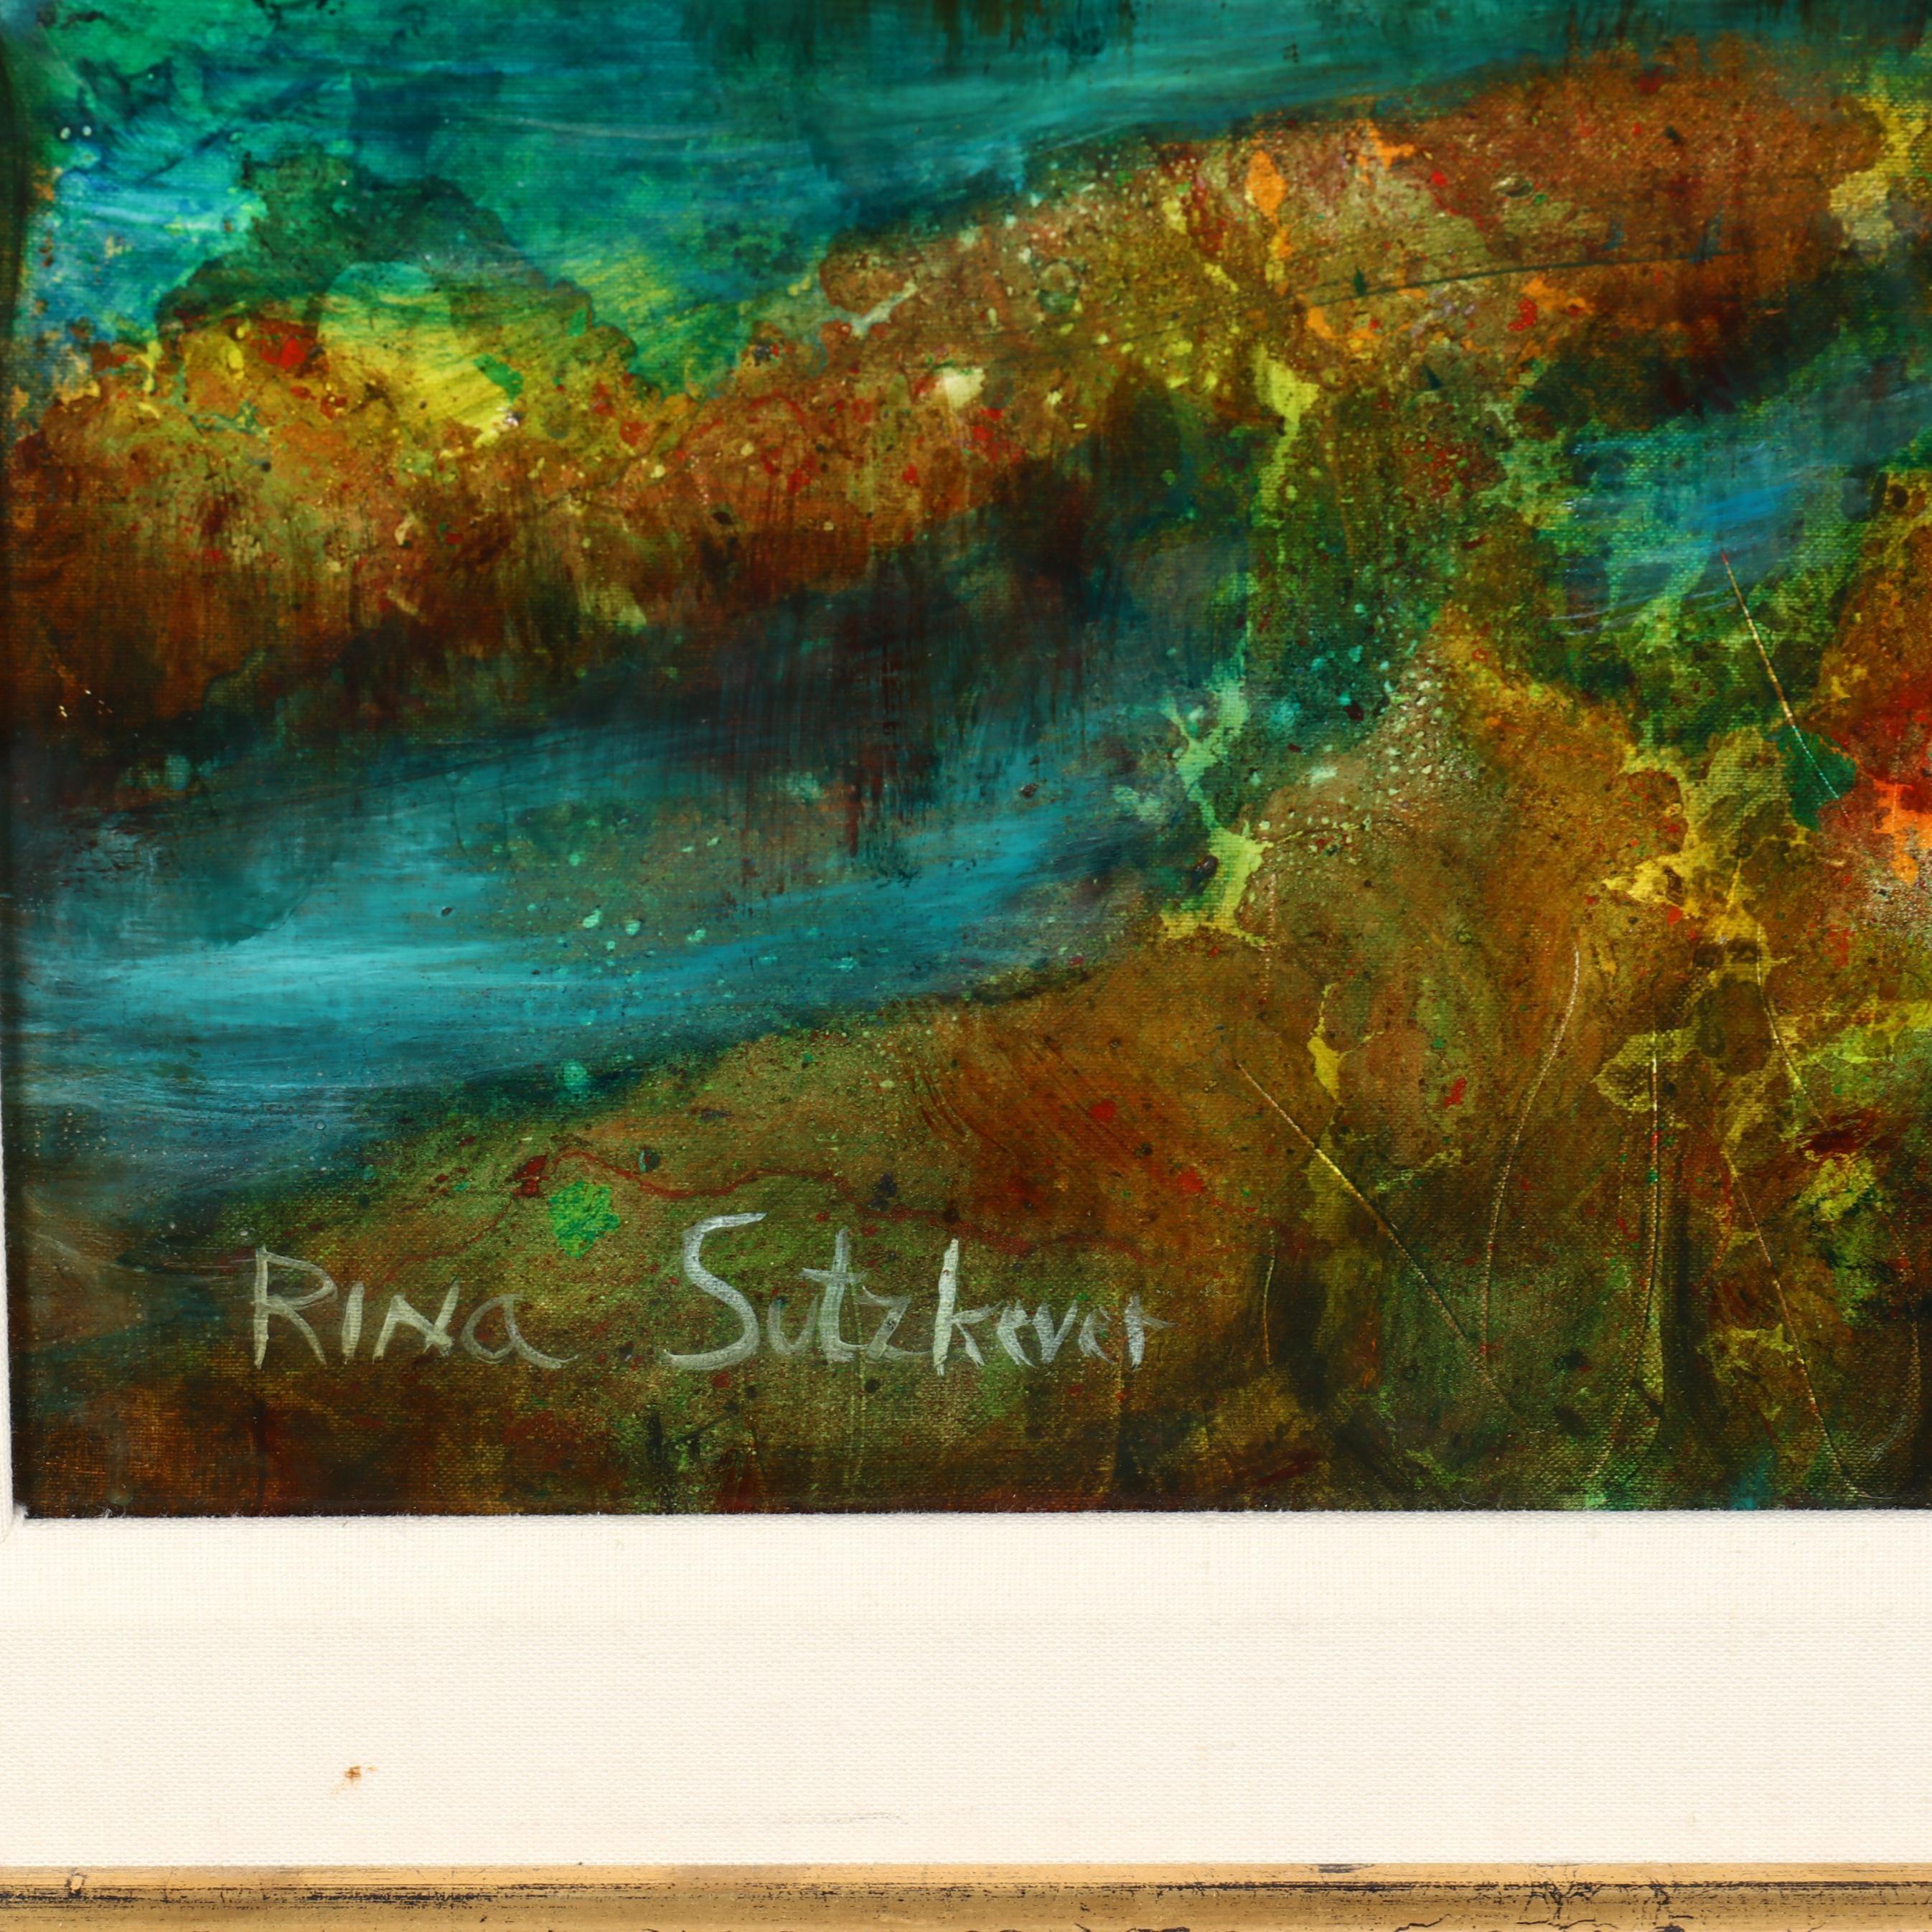 Grande peinture à l'huile russe israélienne de réalisme fantastique et surréaliste Fille au Swan - Painting de Rina Sutzkever